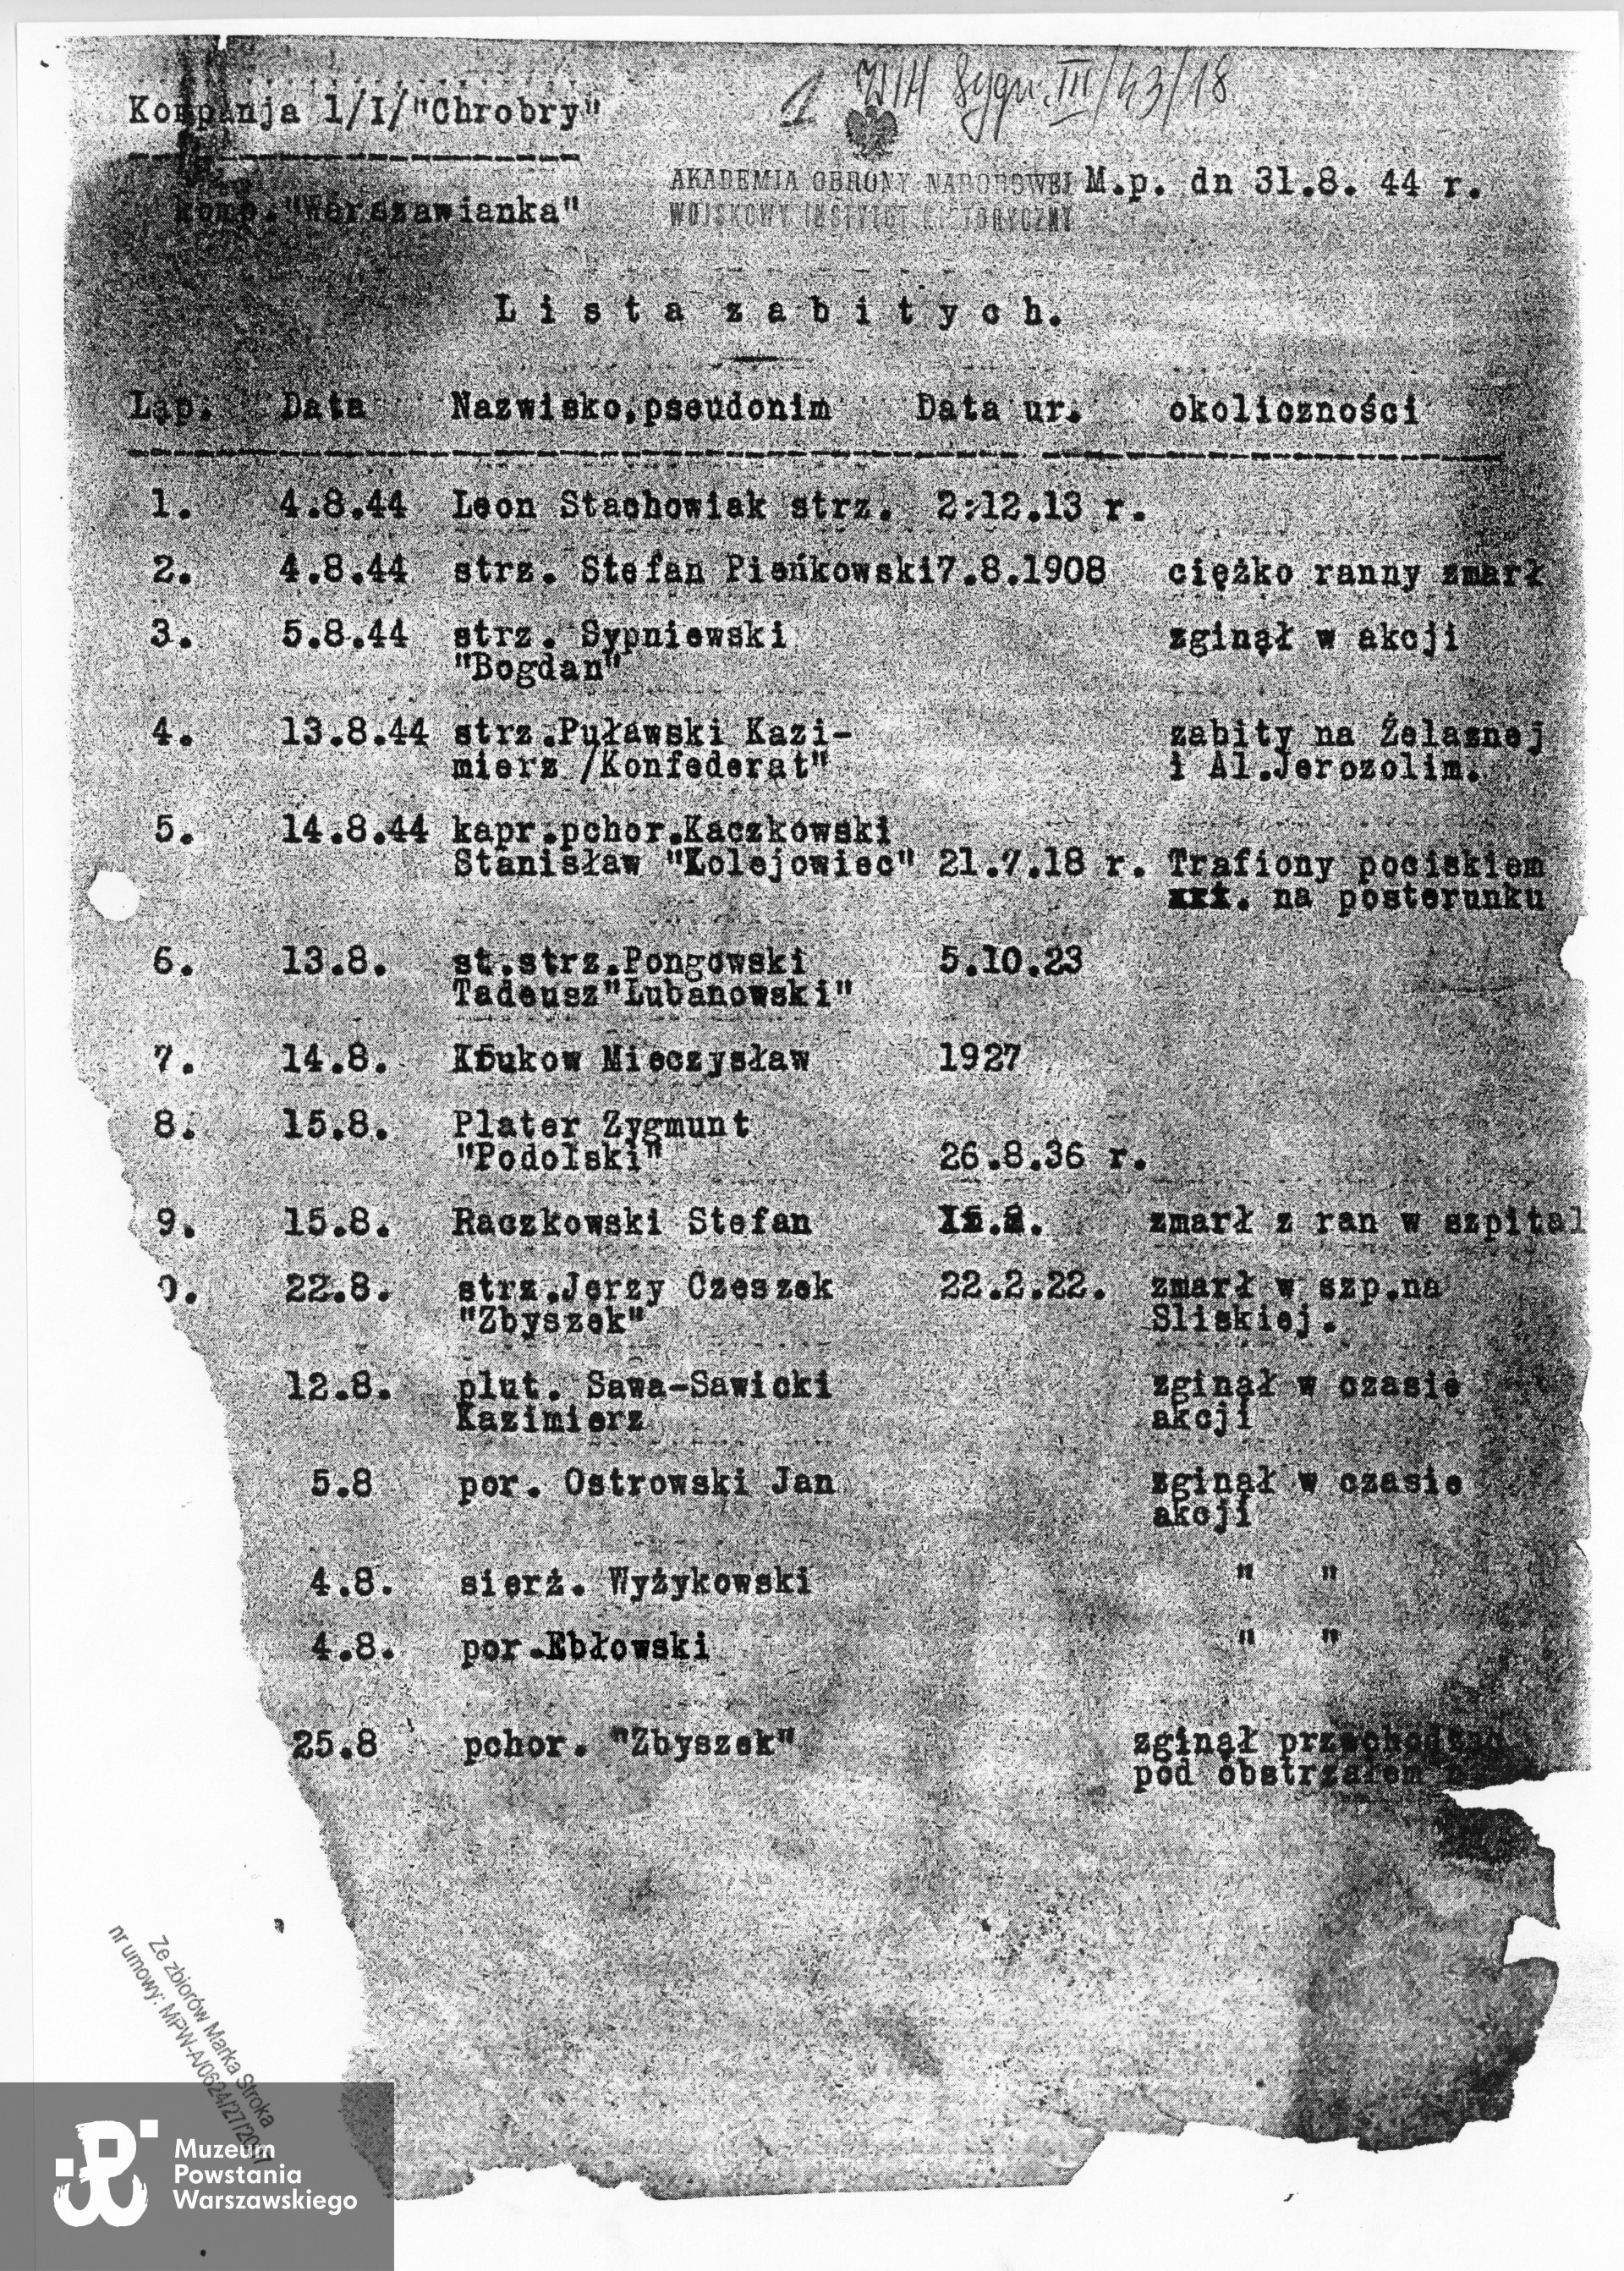 Lista zabitych z  1. kompanii "Warszawianka”, I batalion, zgrupowanie "Chrobry II", dokument z dnia 31.08.1944, źródło WIH sygn. III/43/18, kserokopia dokumentu w zasobie Teczek Personalnych w Dziale Kombatanta MPW